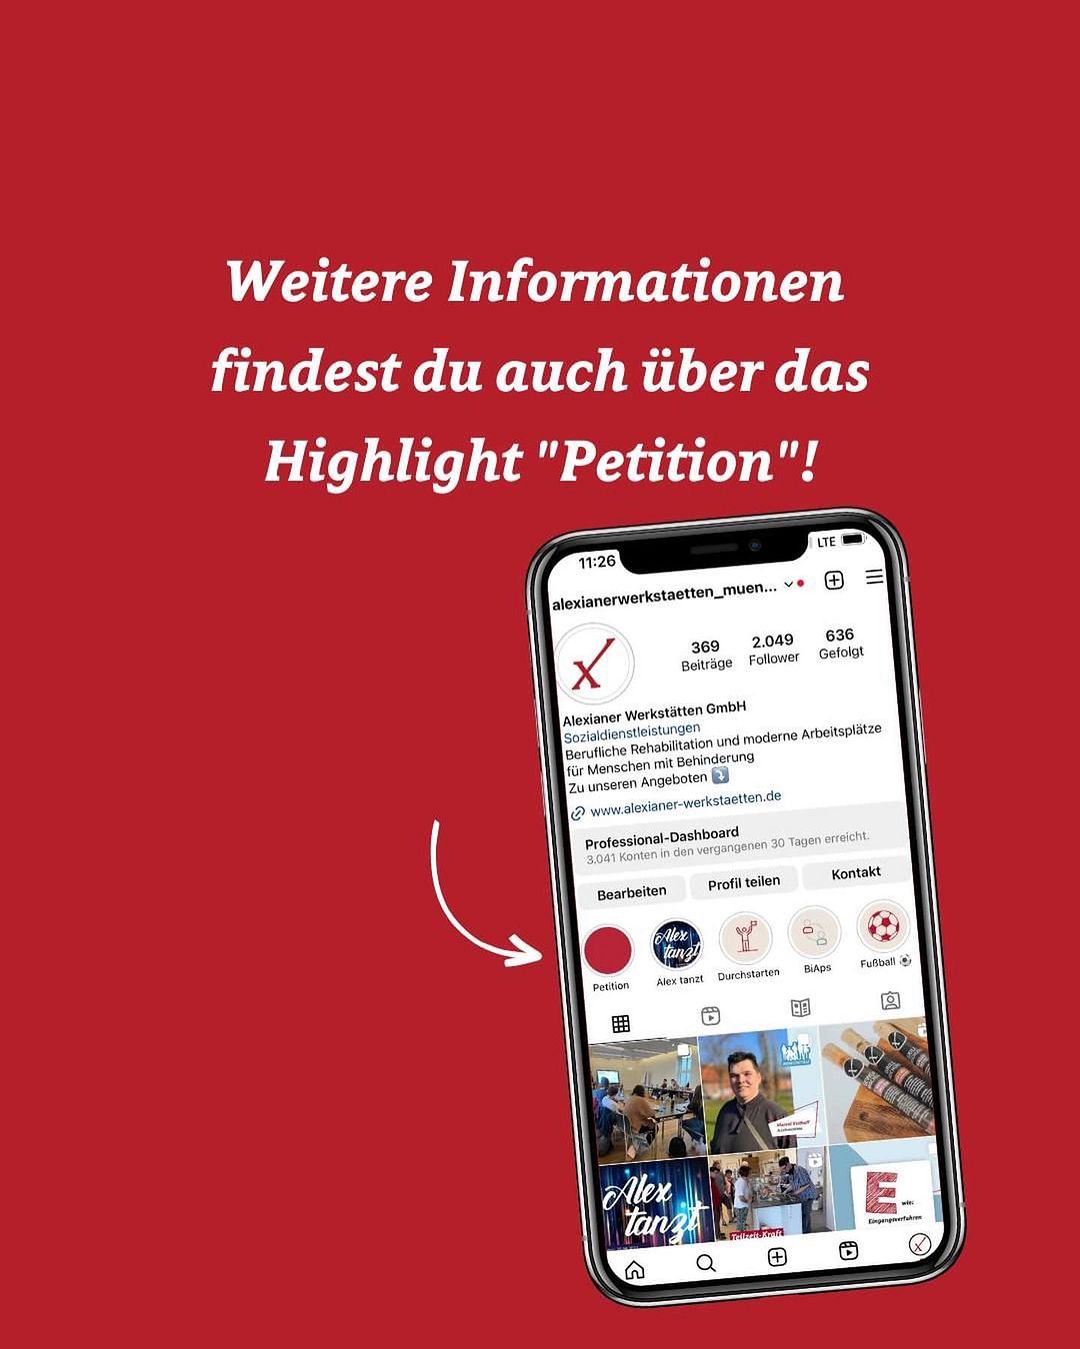 Caritas Werkstatträte starten Petition an den Deutschen Bundestag